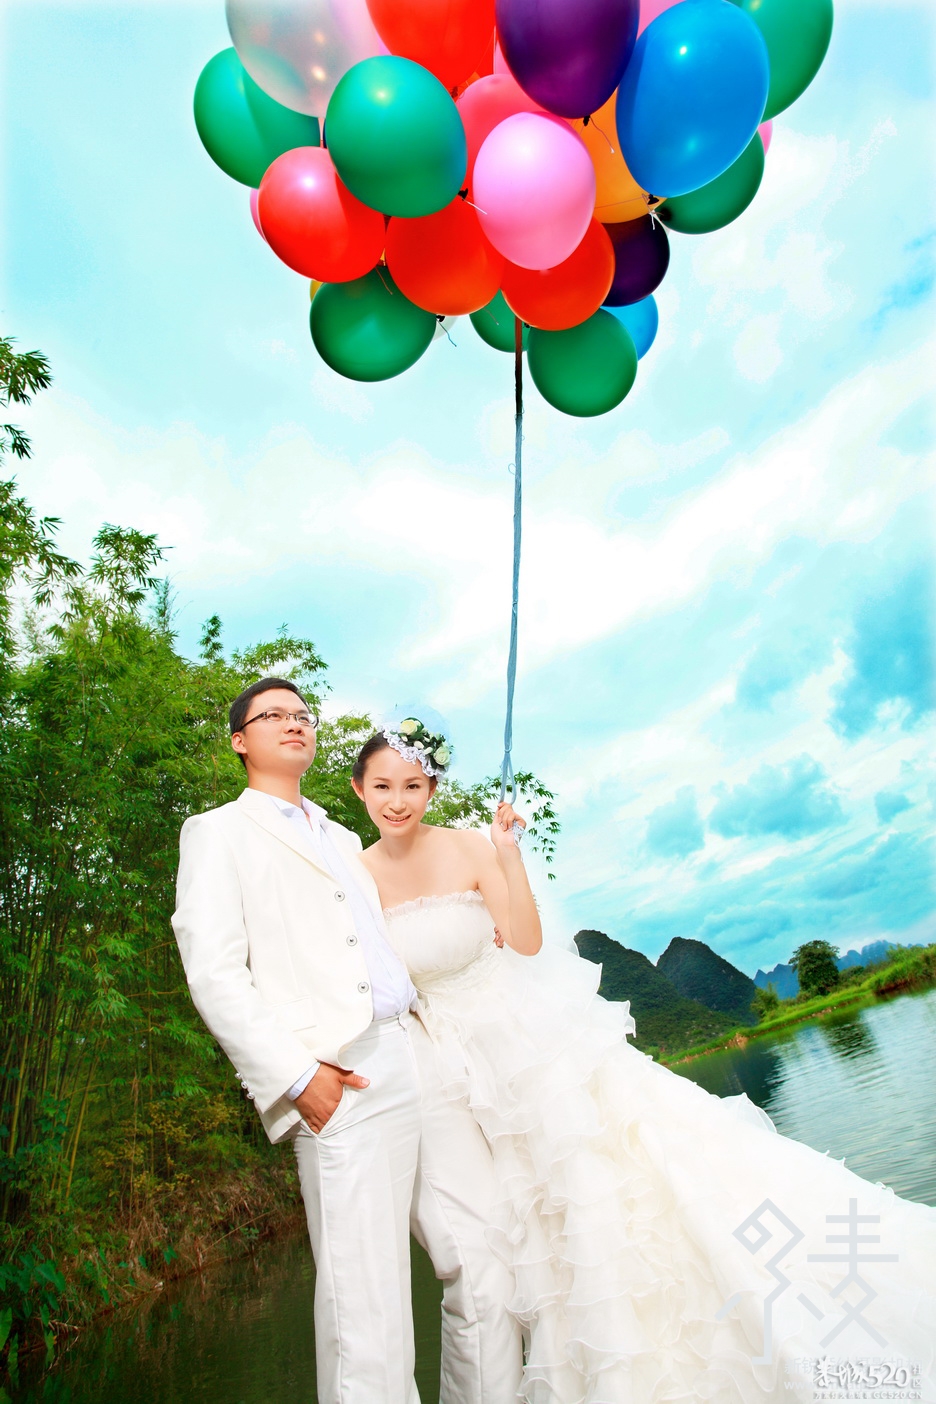 桂林小麦婚纱摄影微信自助导航全新上线283 / 作者:桂林小麦摄影 / 帖子ID:64543